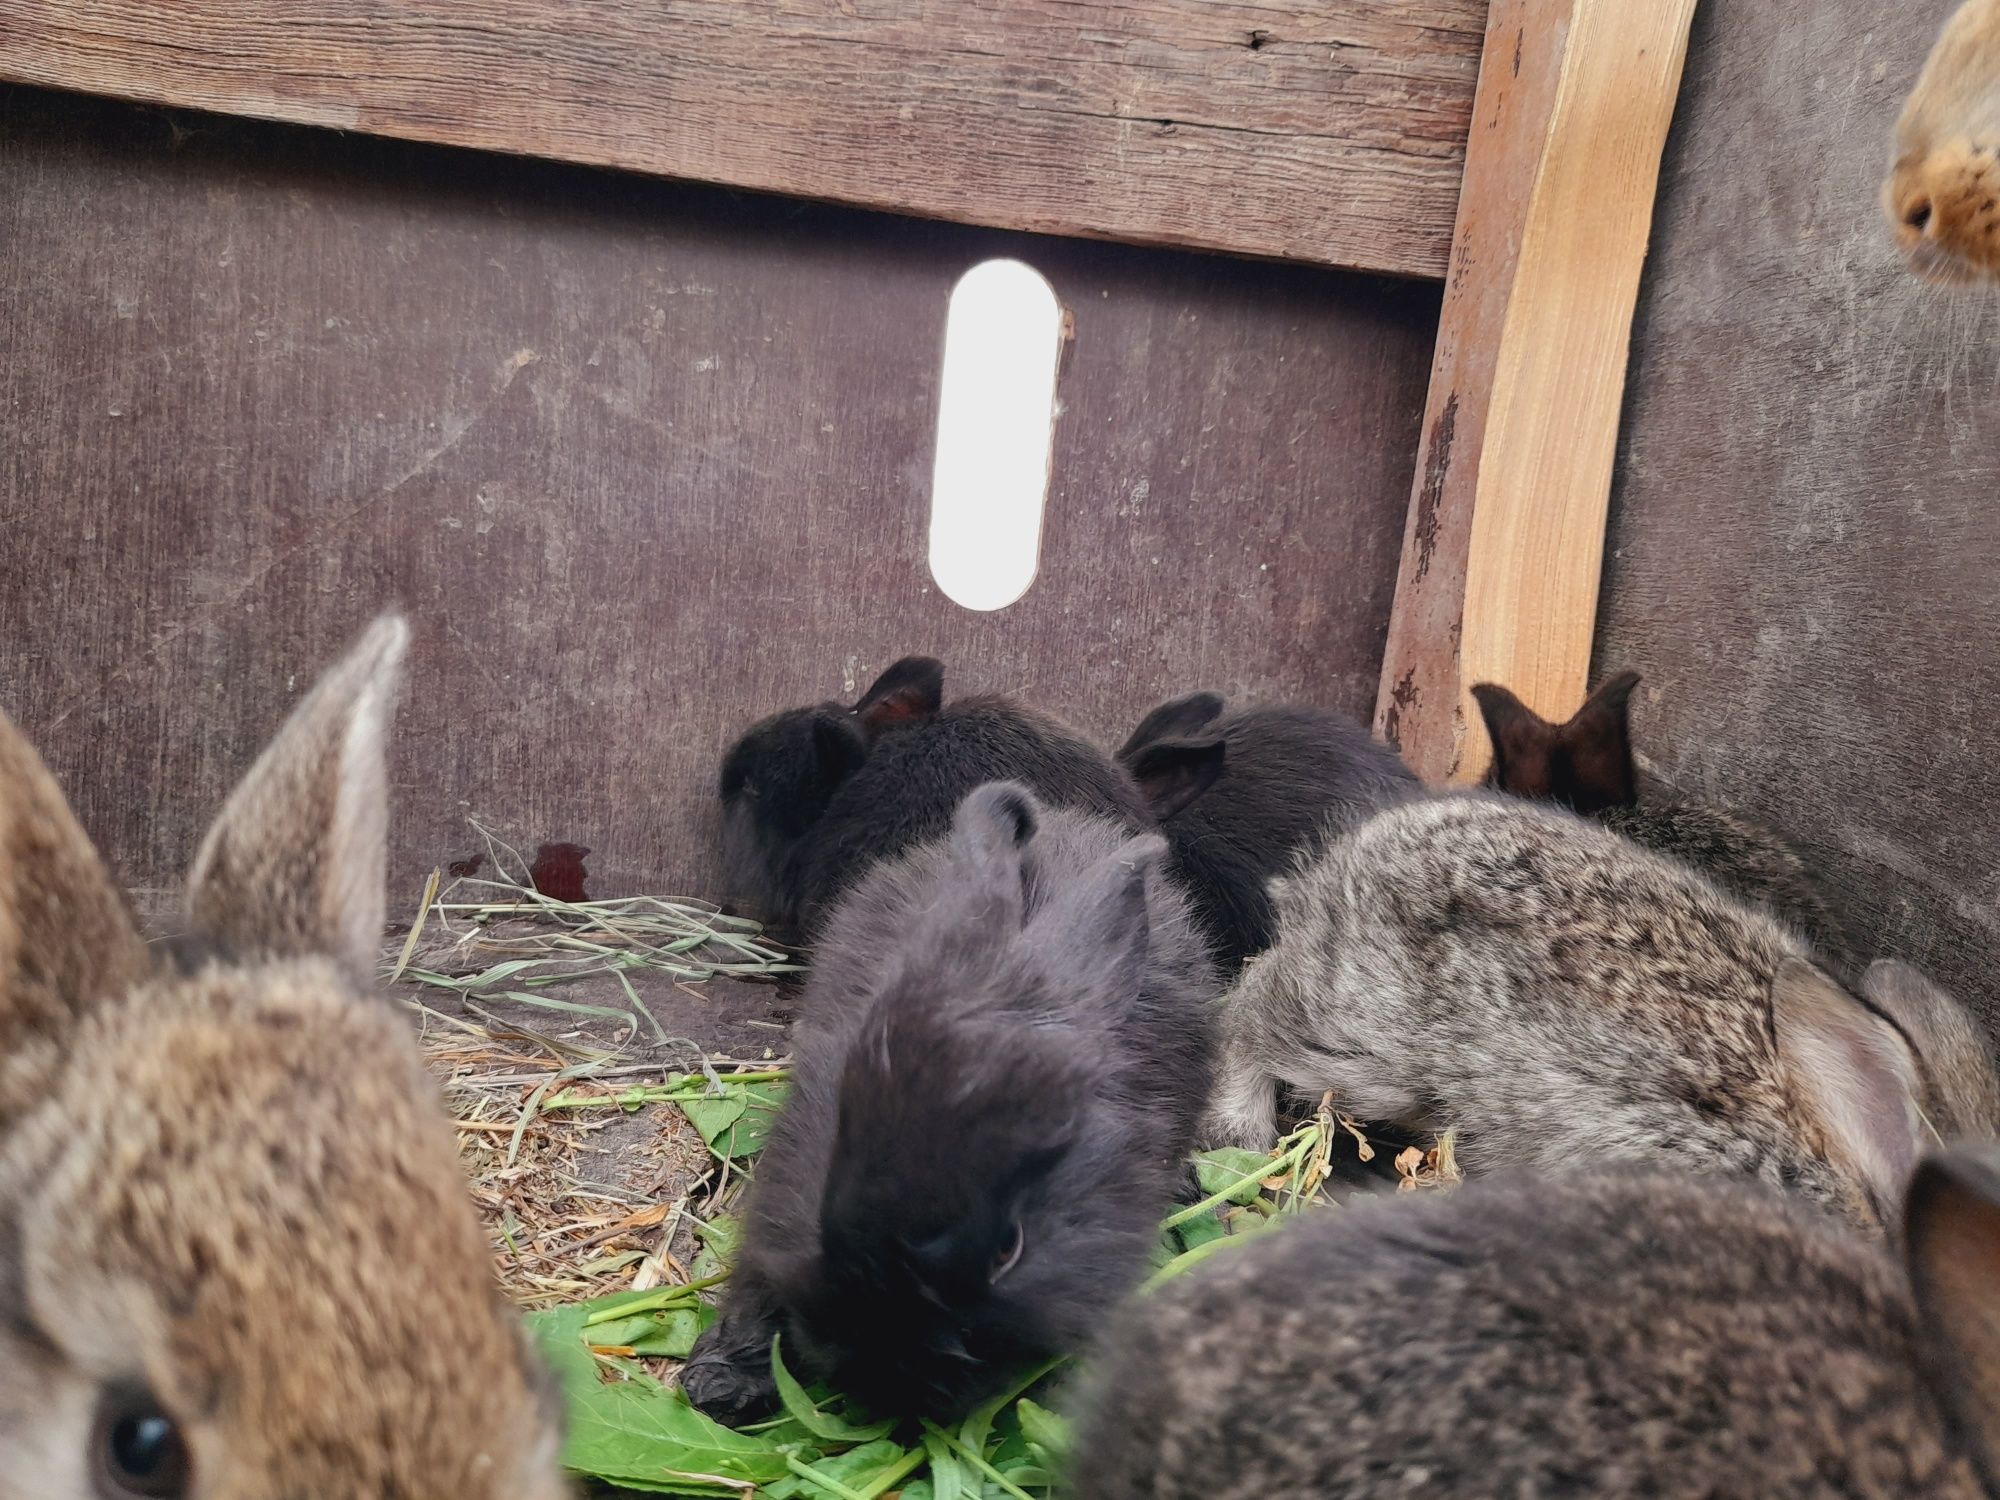 Кролики крольчата